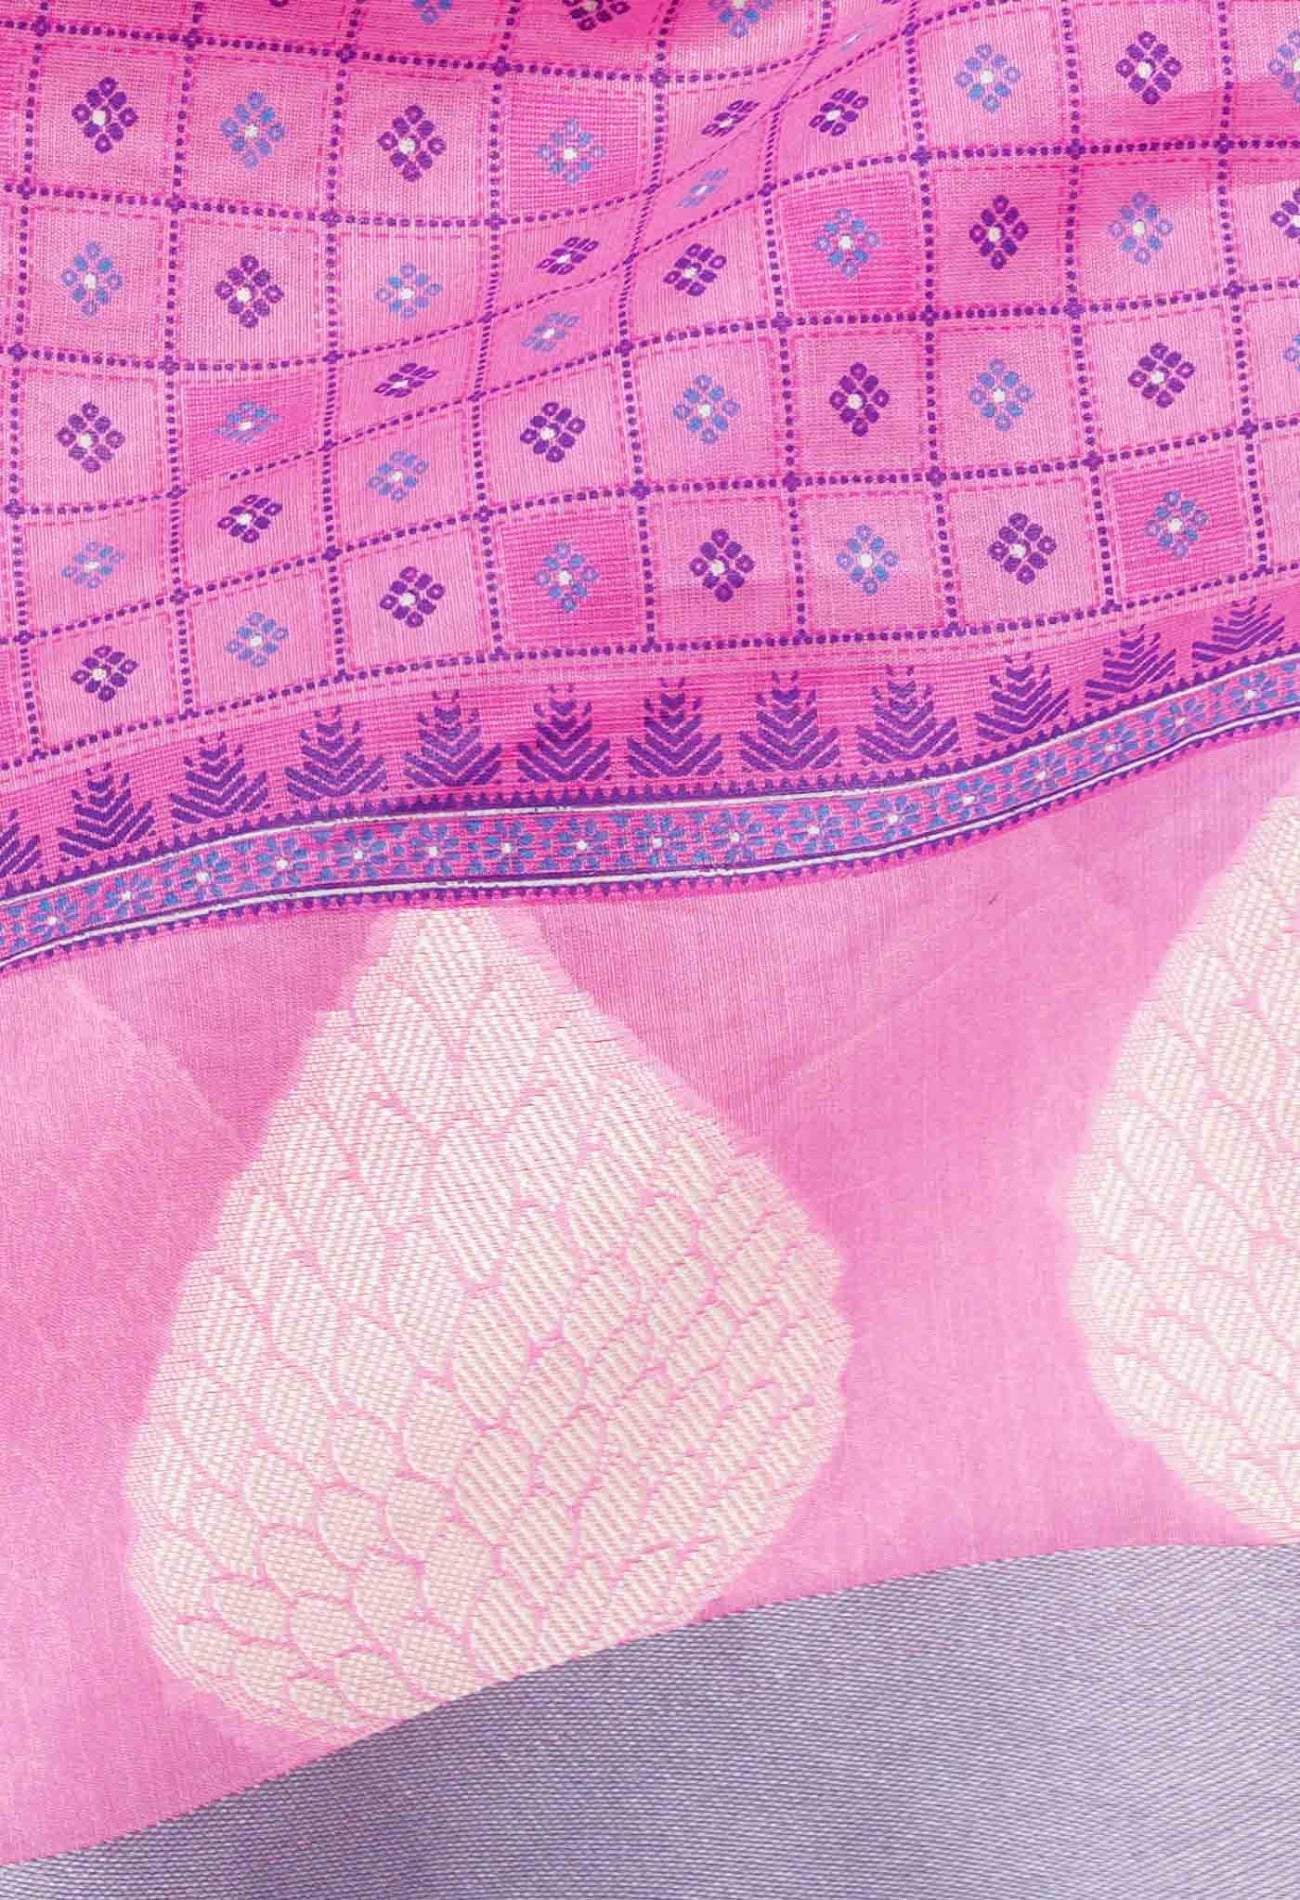 Pink Block Printed Chanderi Sico Saree